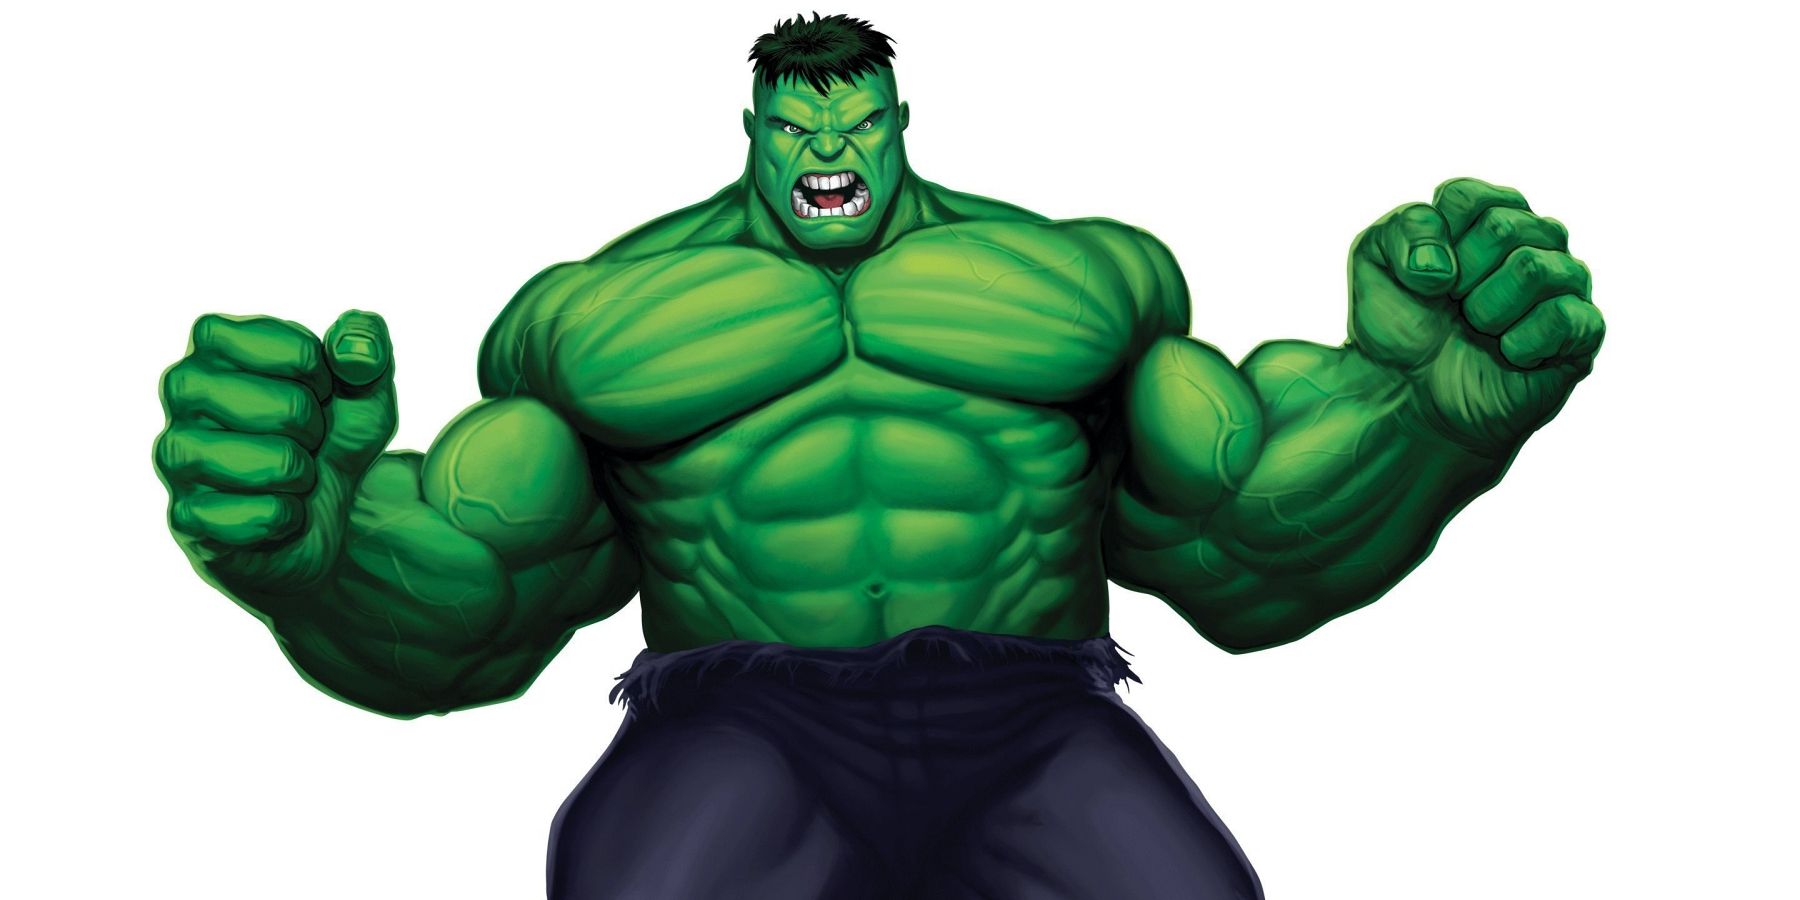 Fortnite Leak Reveals Hulk Skin and Emote